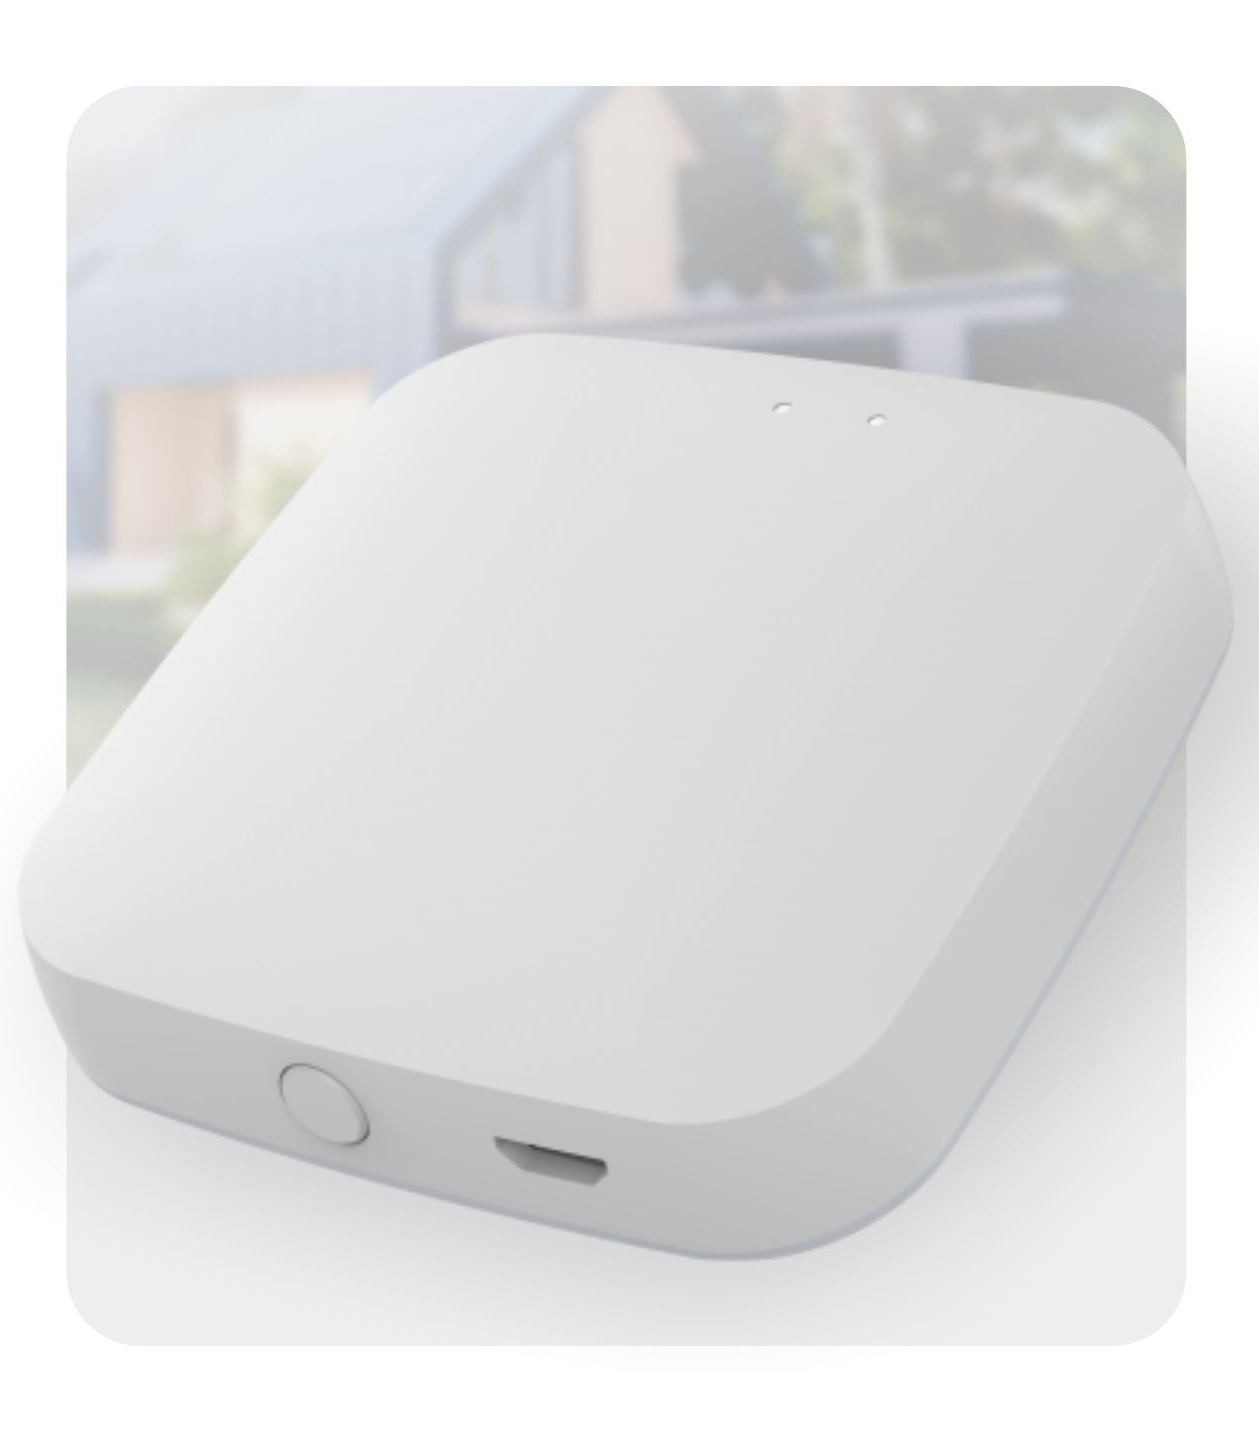 Zigbee Smart Home Gateway